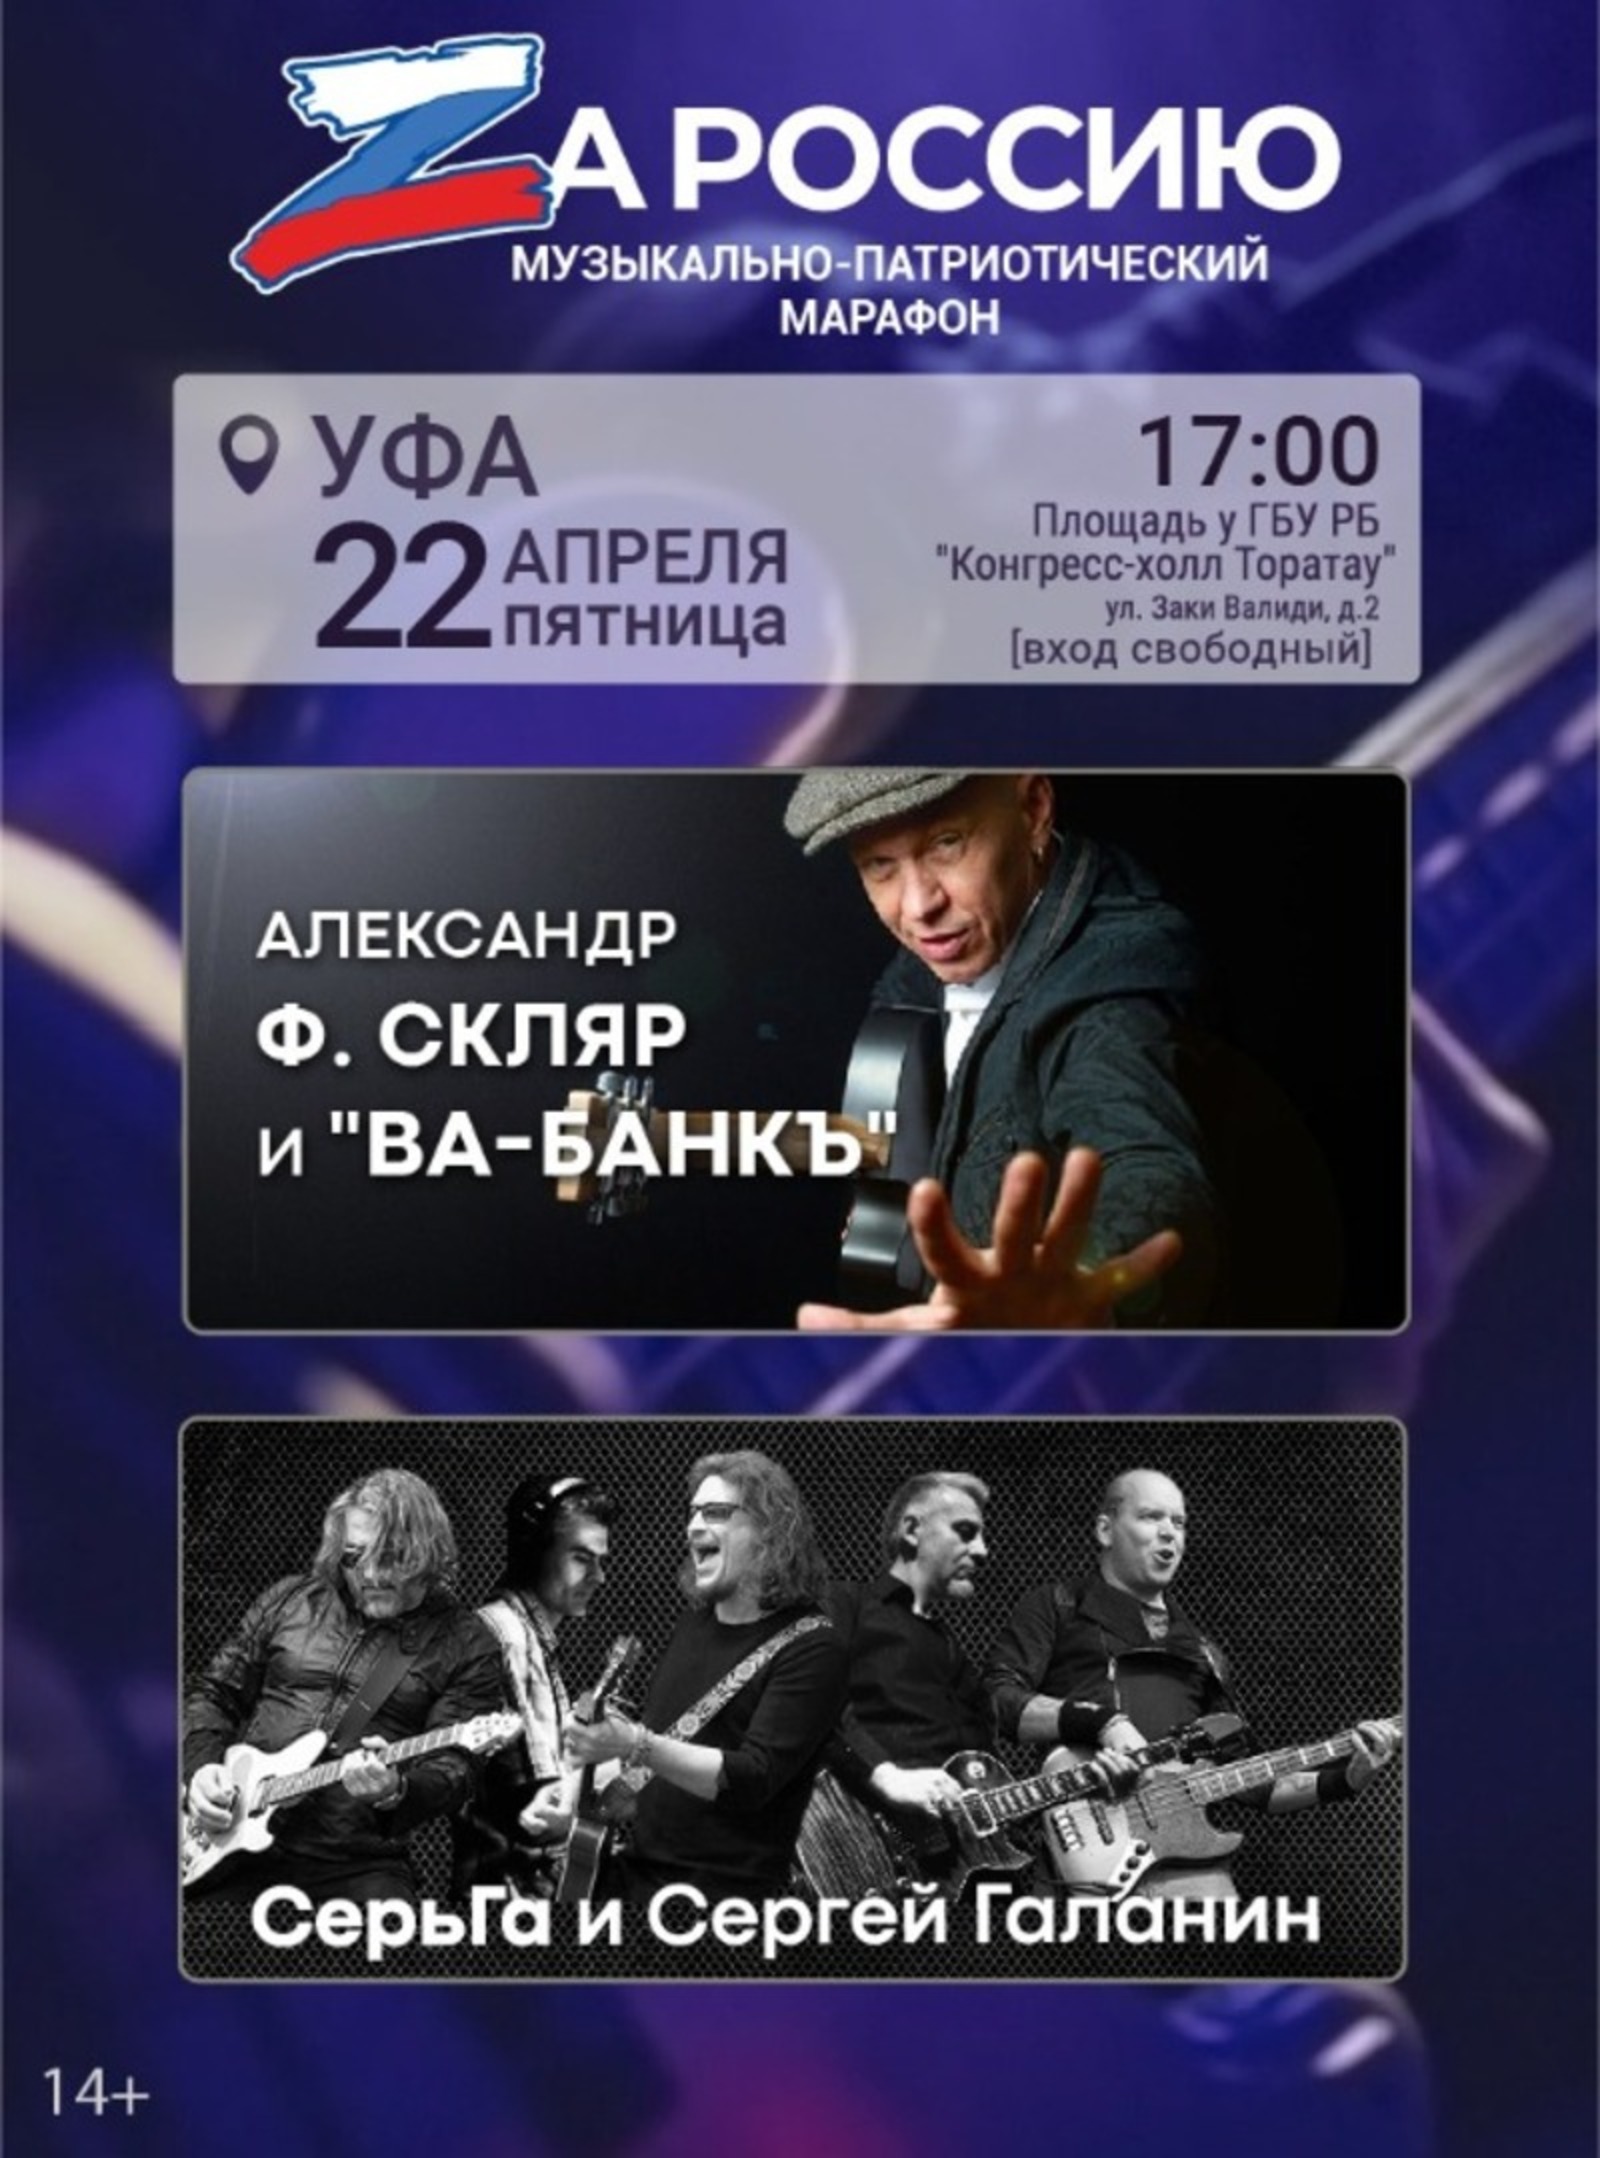 В Уфе рок-звёзды дадут патриотический концерт «ZаРоссию»